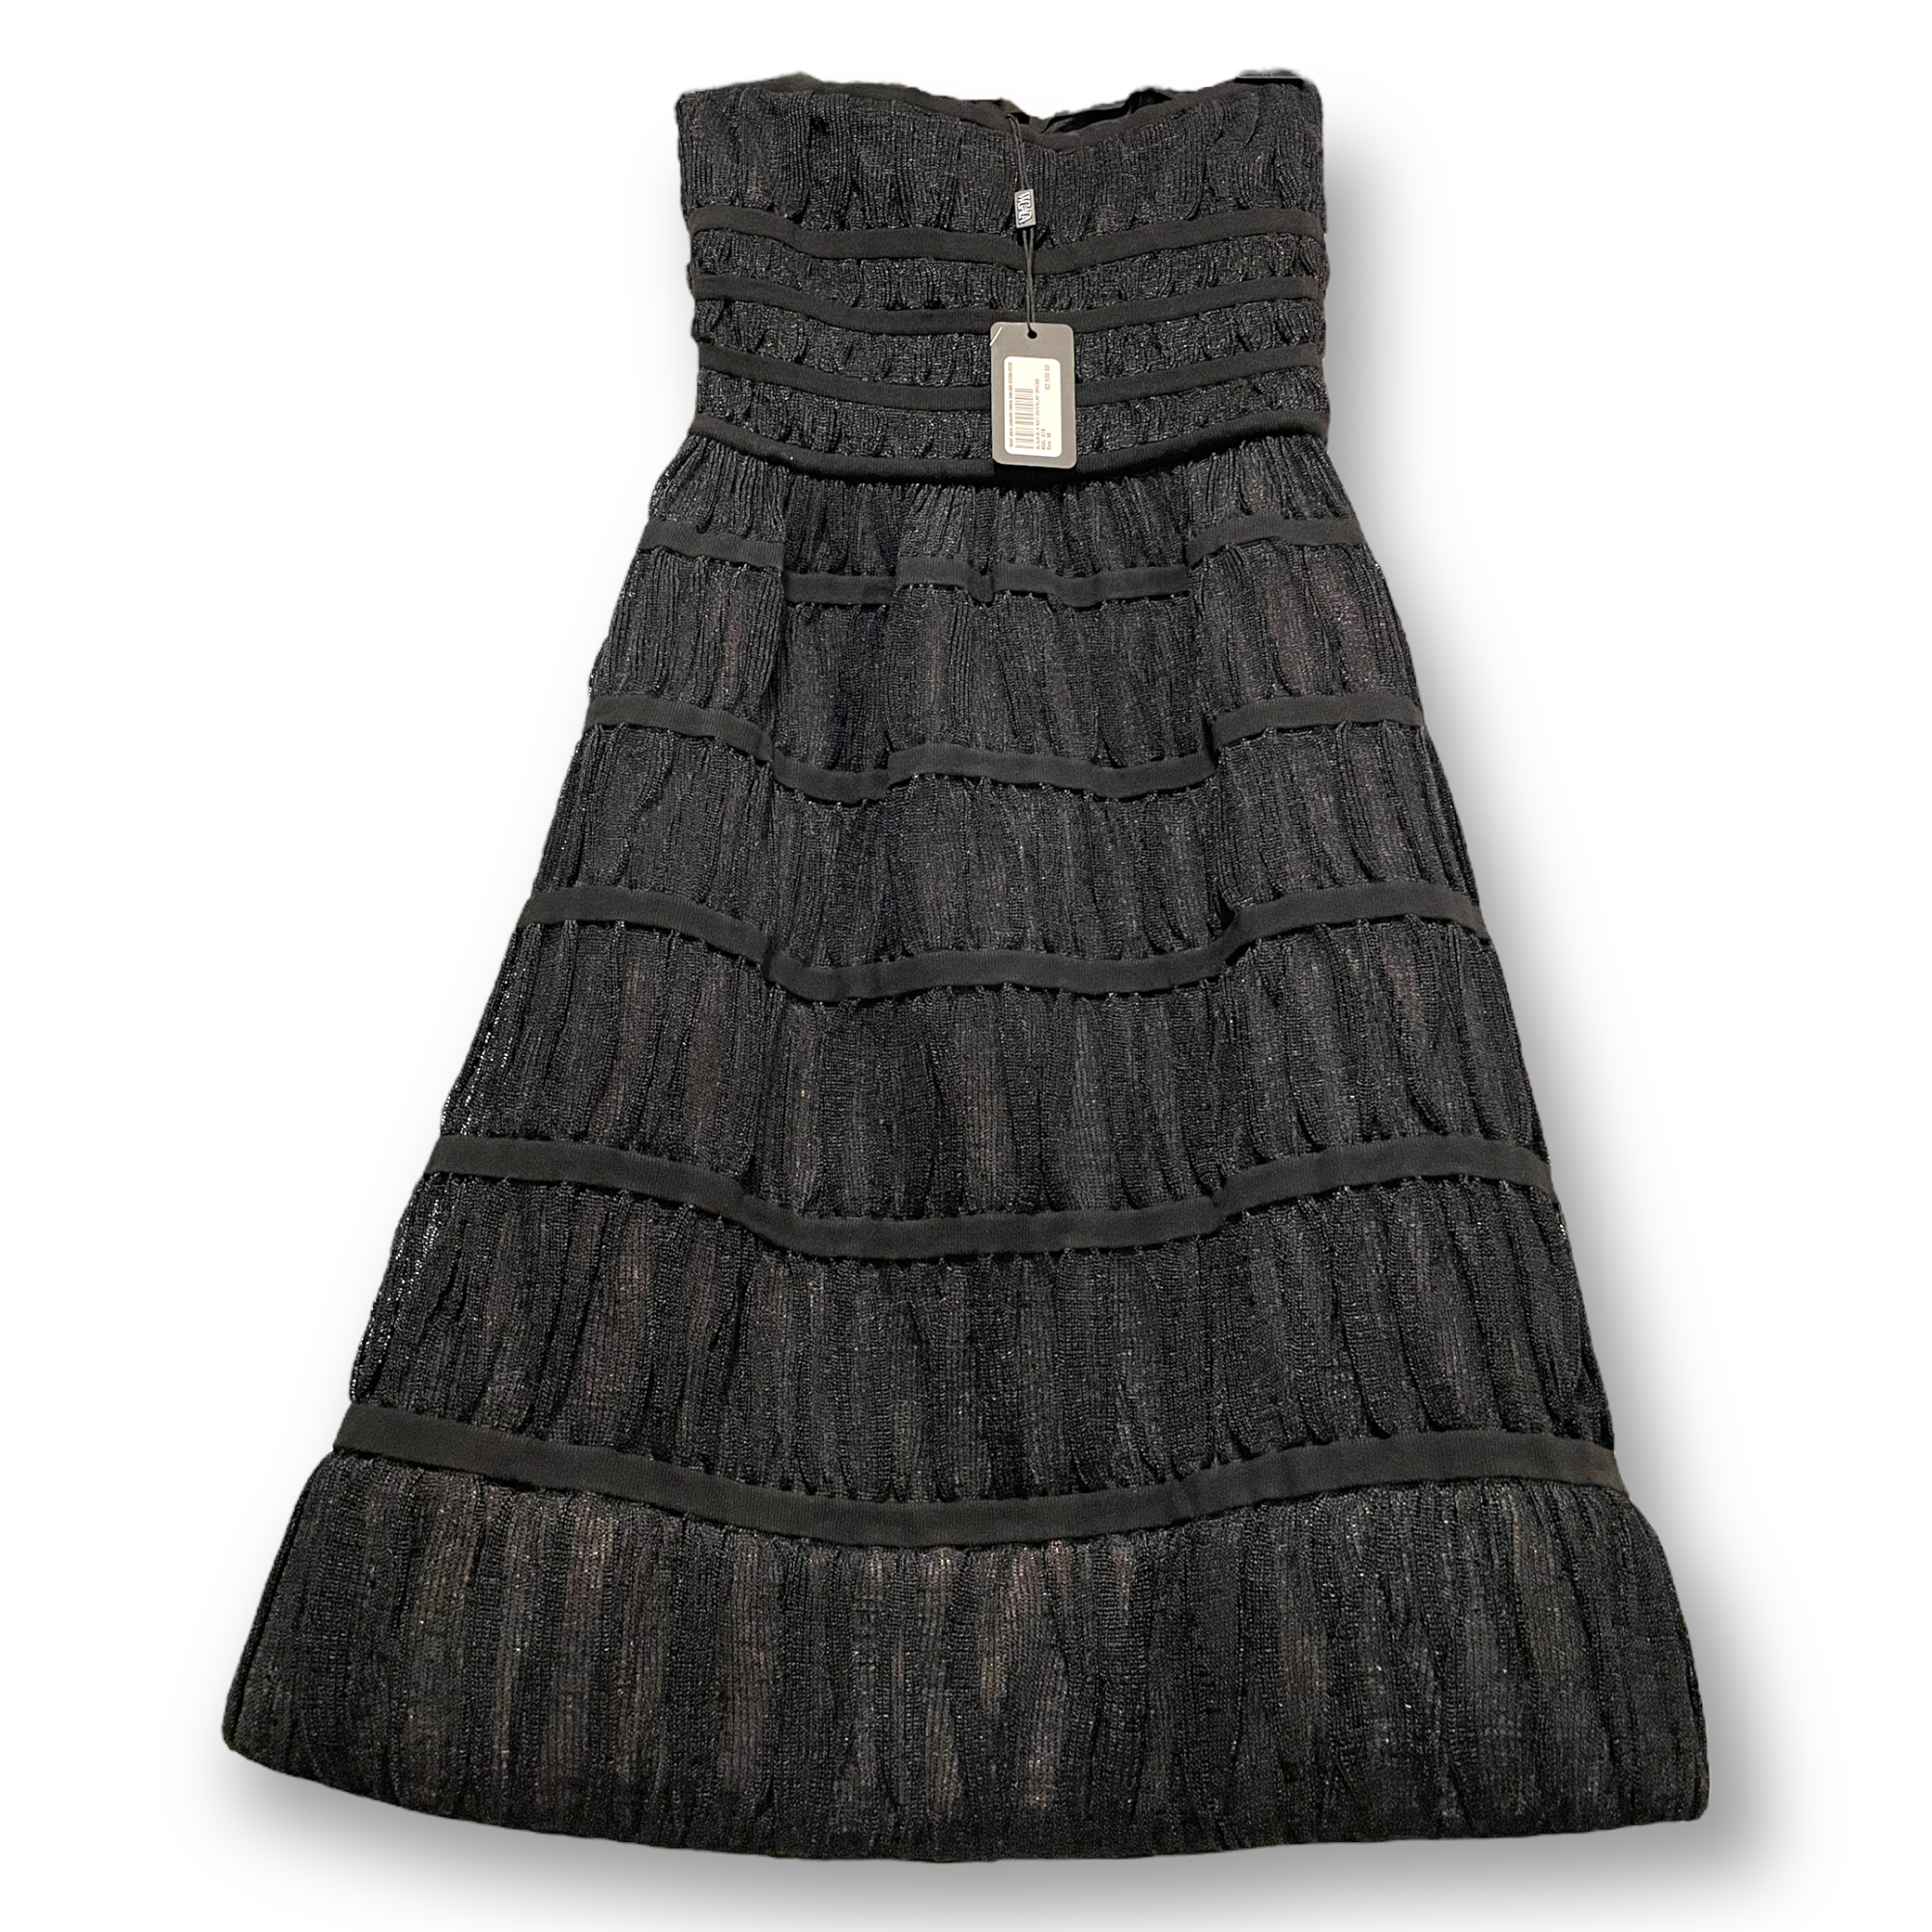 ALAÏA PARIS Black Knit Overlay Dress